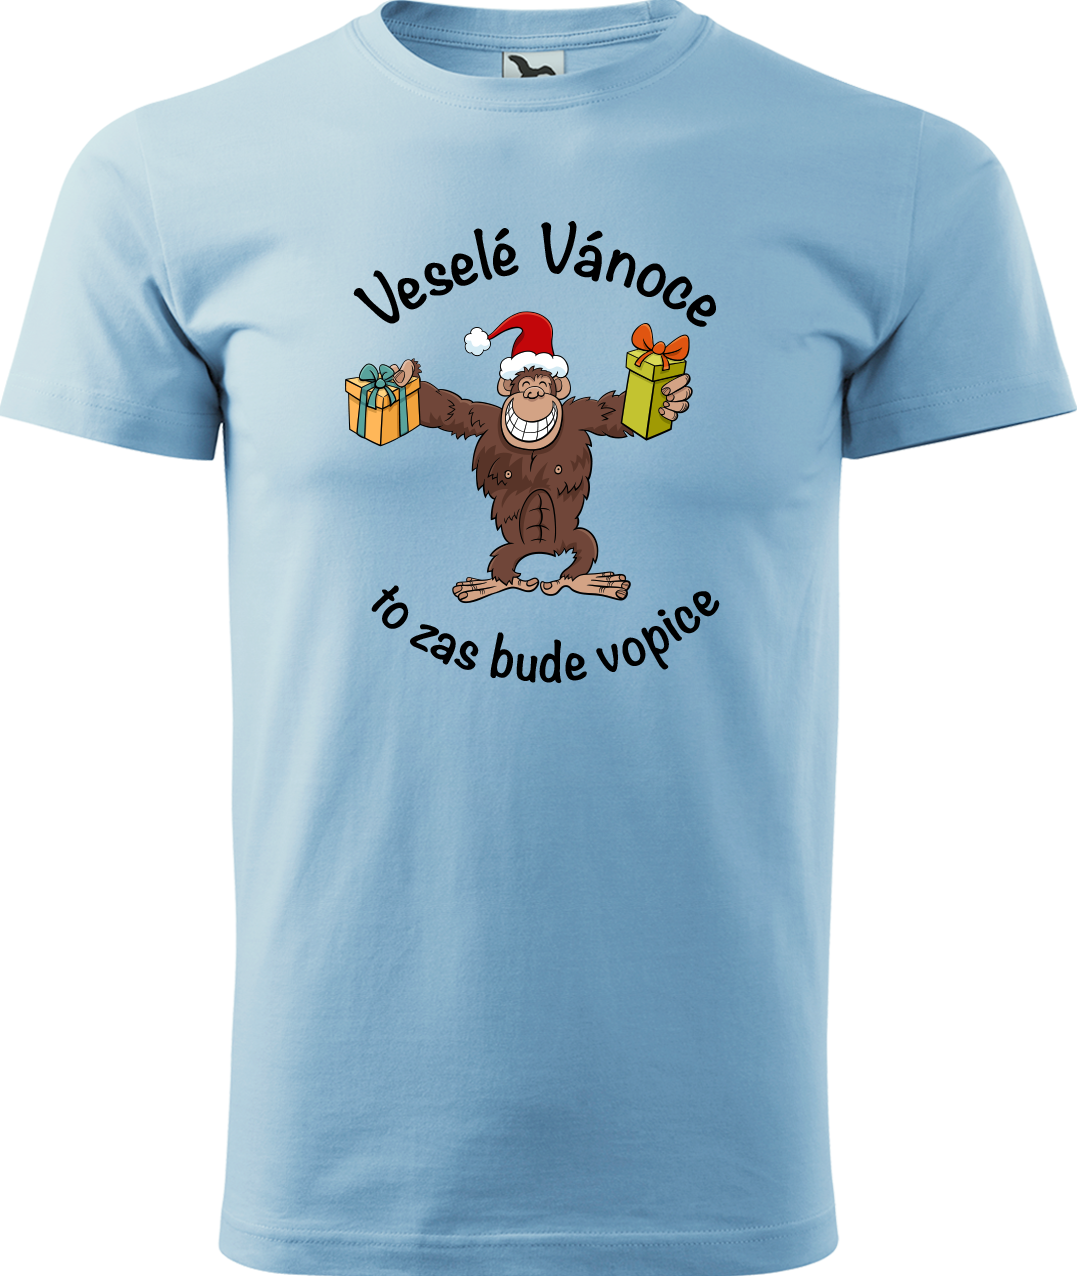 Pánské vánoční tričko - Veselé Vánoce to zas bude vopice (hnědý opičák) Velikost: XL, Barva: Nebesky modrá (15)